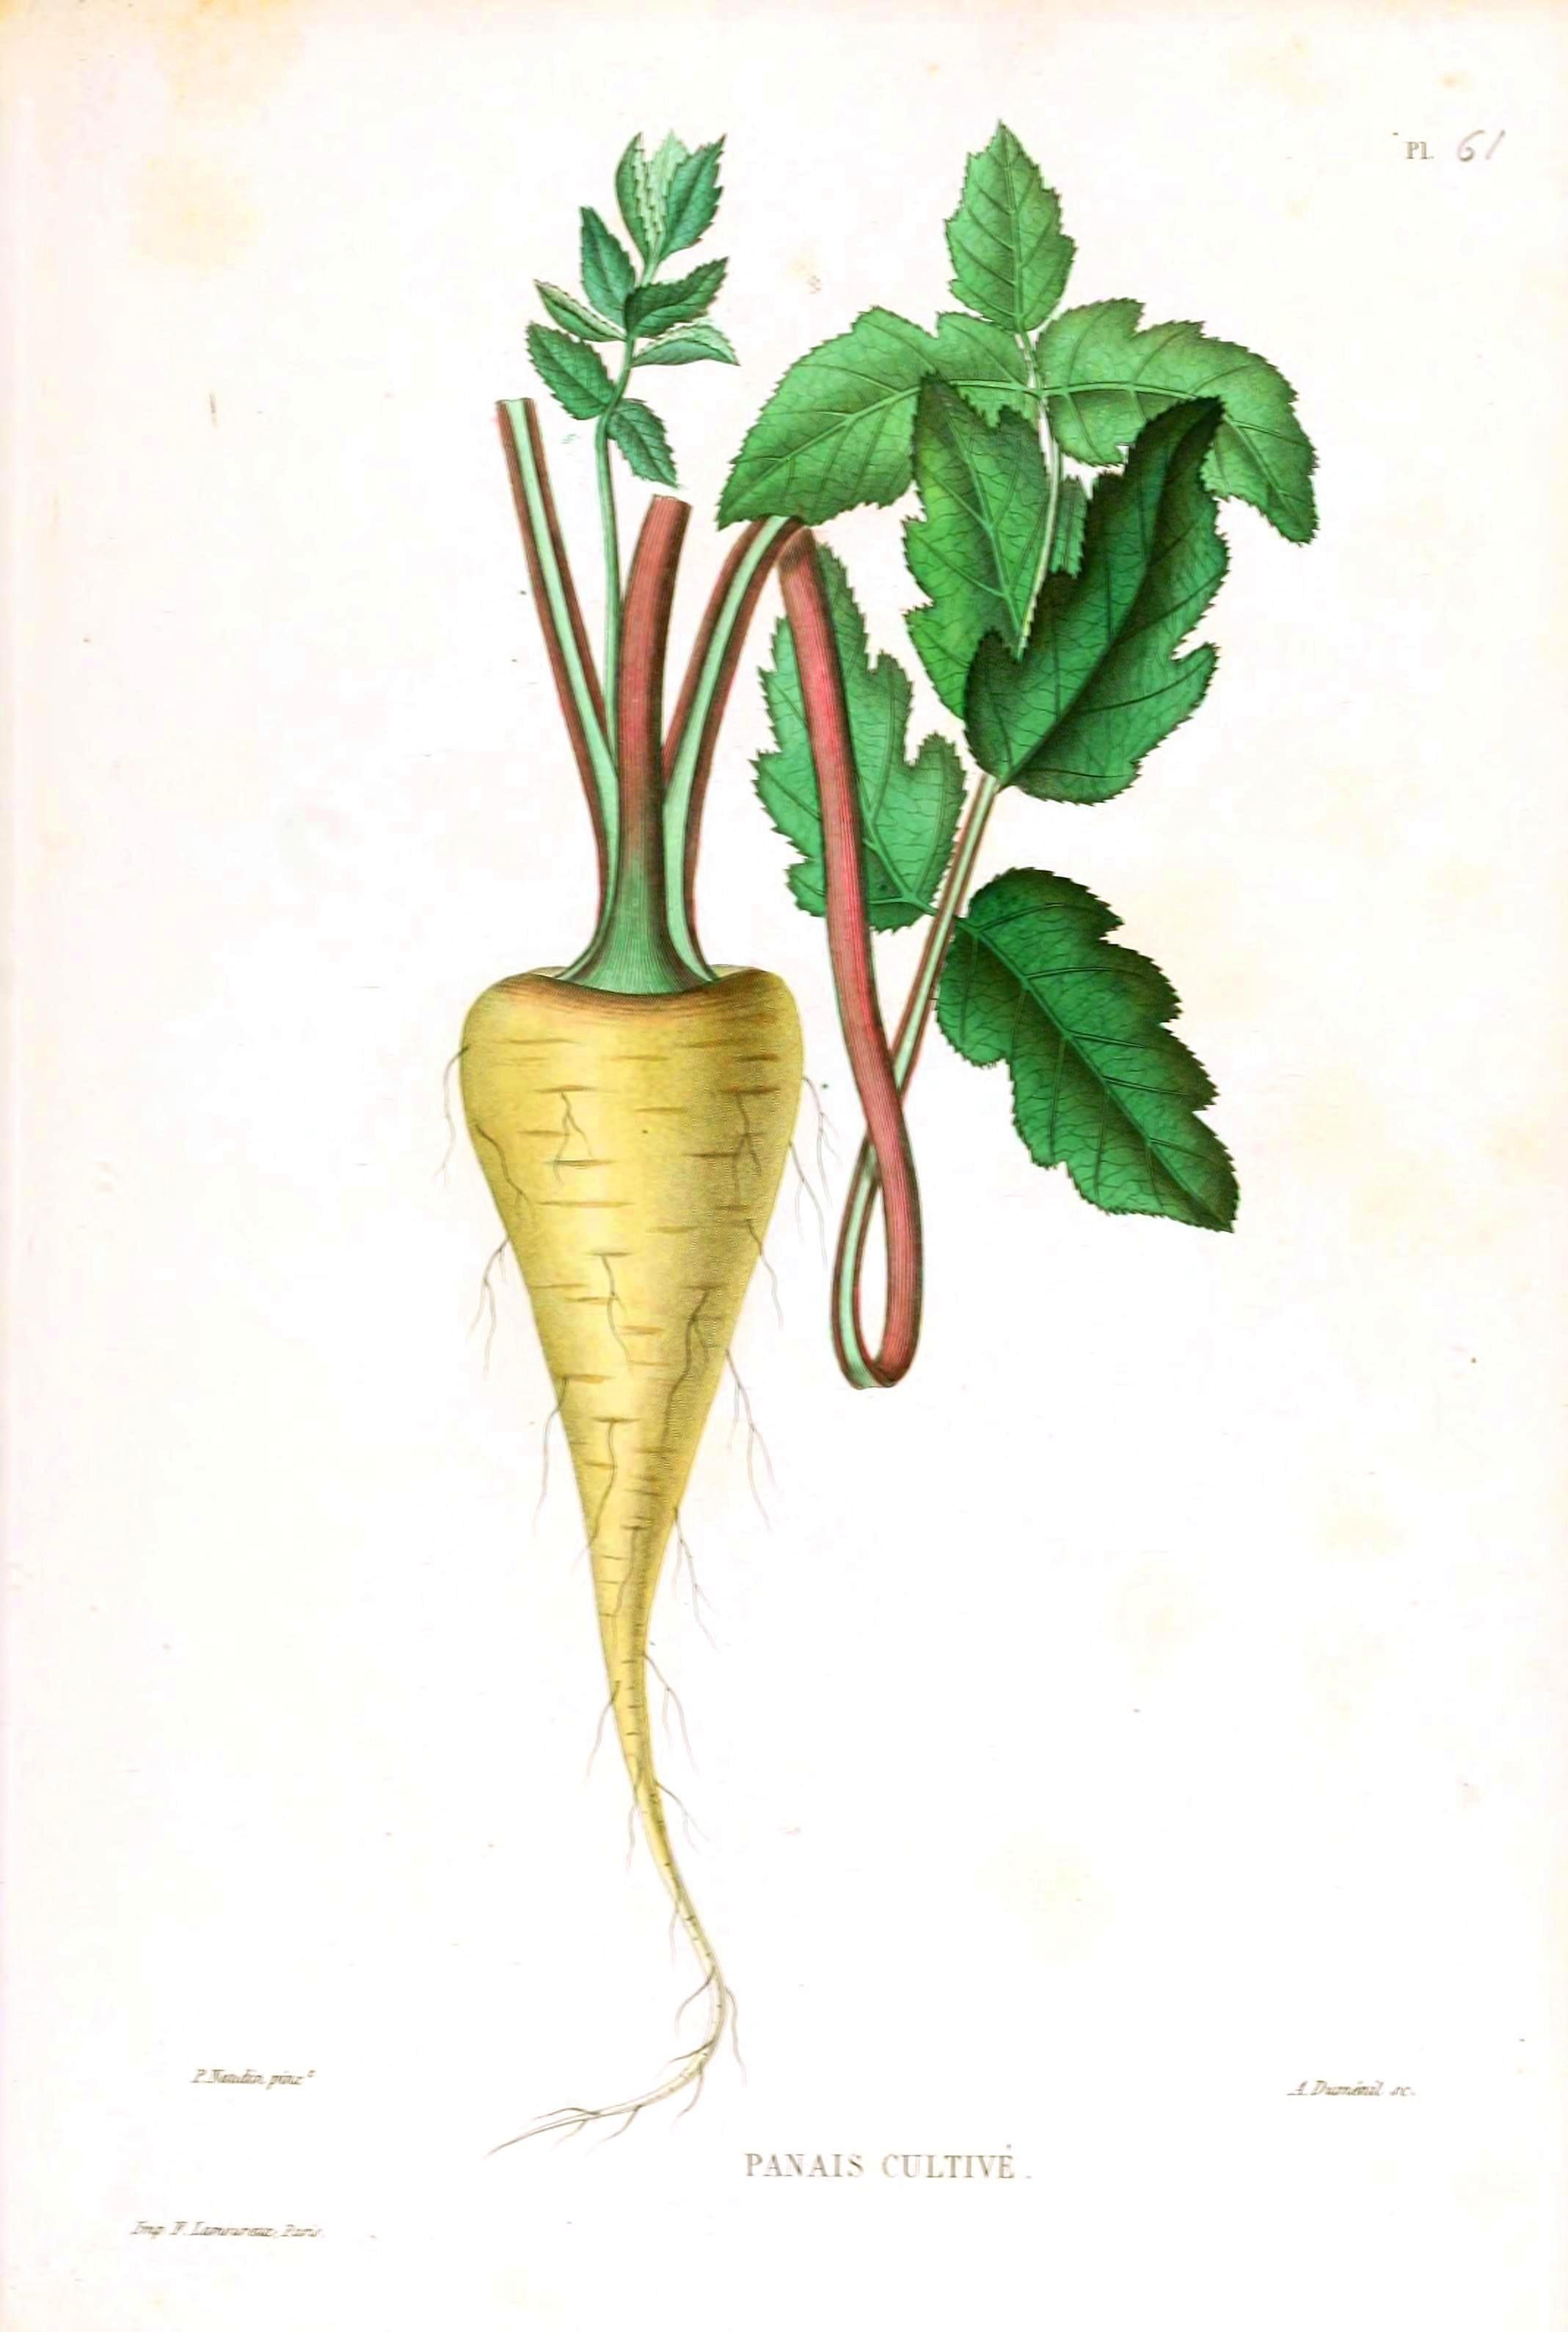 Vintage parsnip illustration